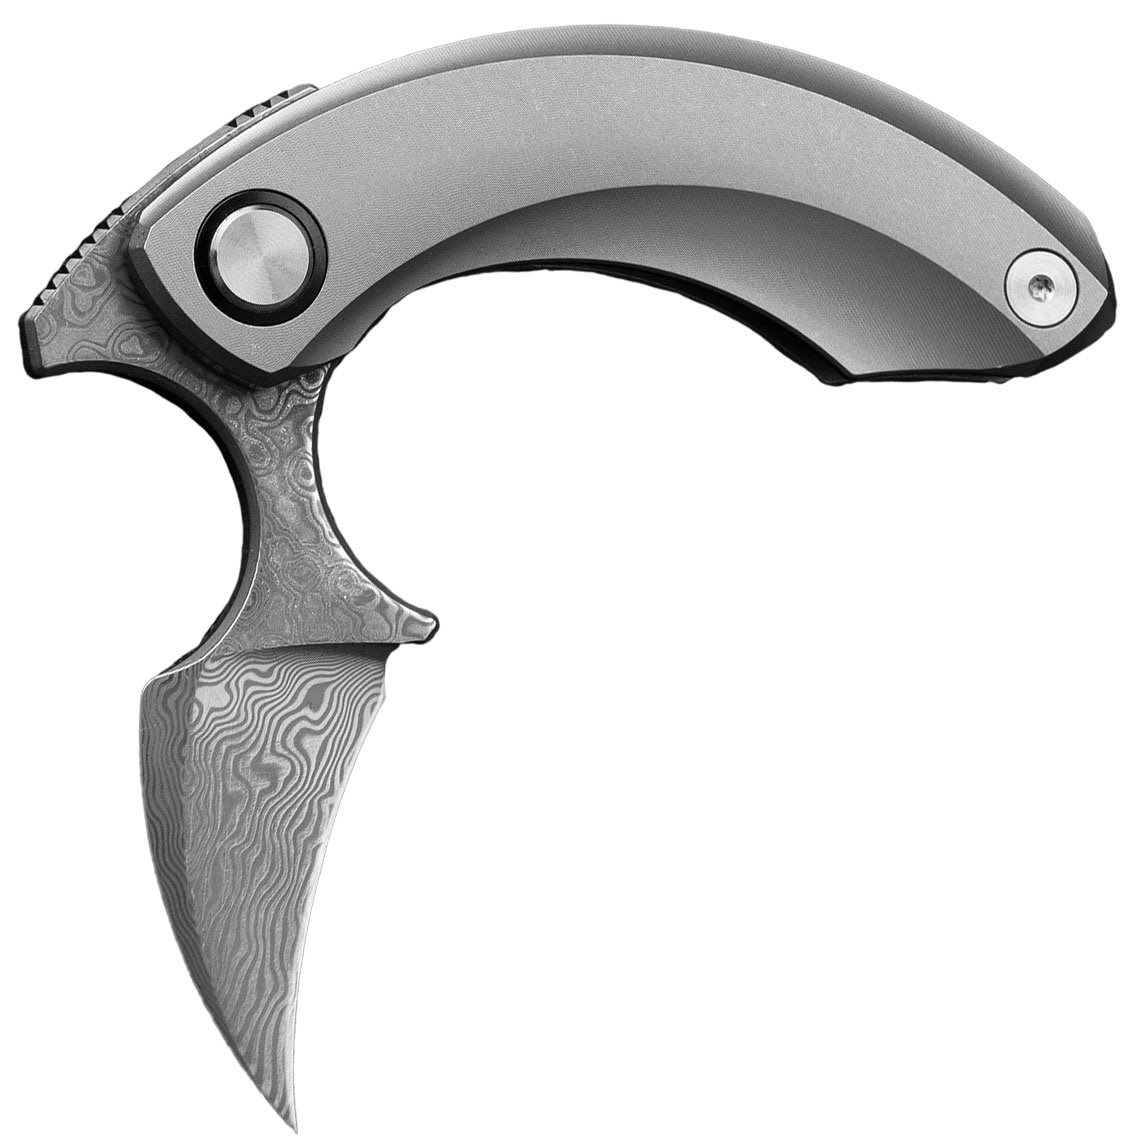 Nóż składany Bestech Knives Strelit - Damascus/Grey Titanium